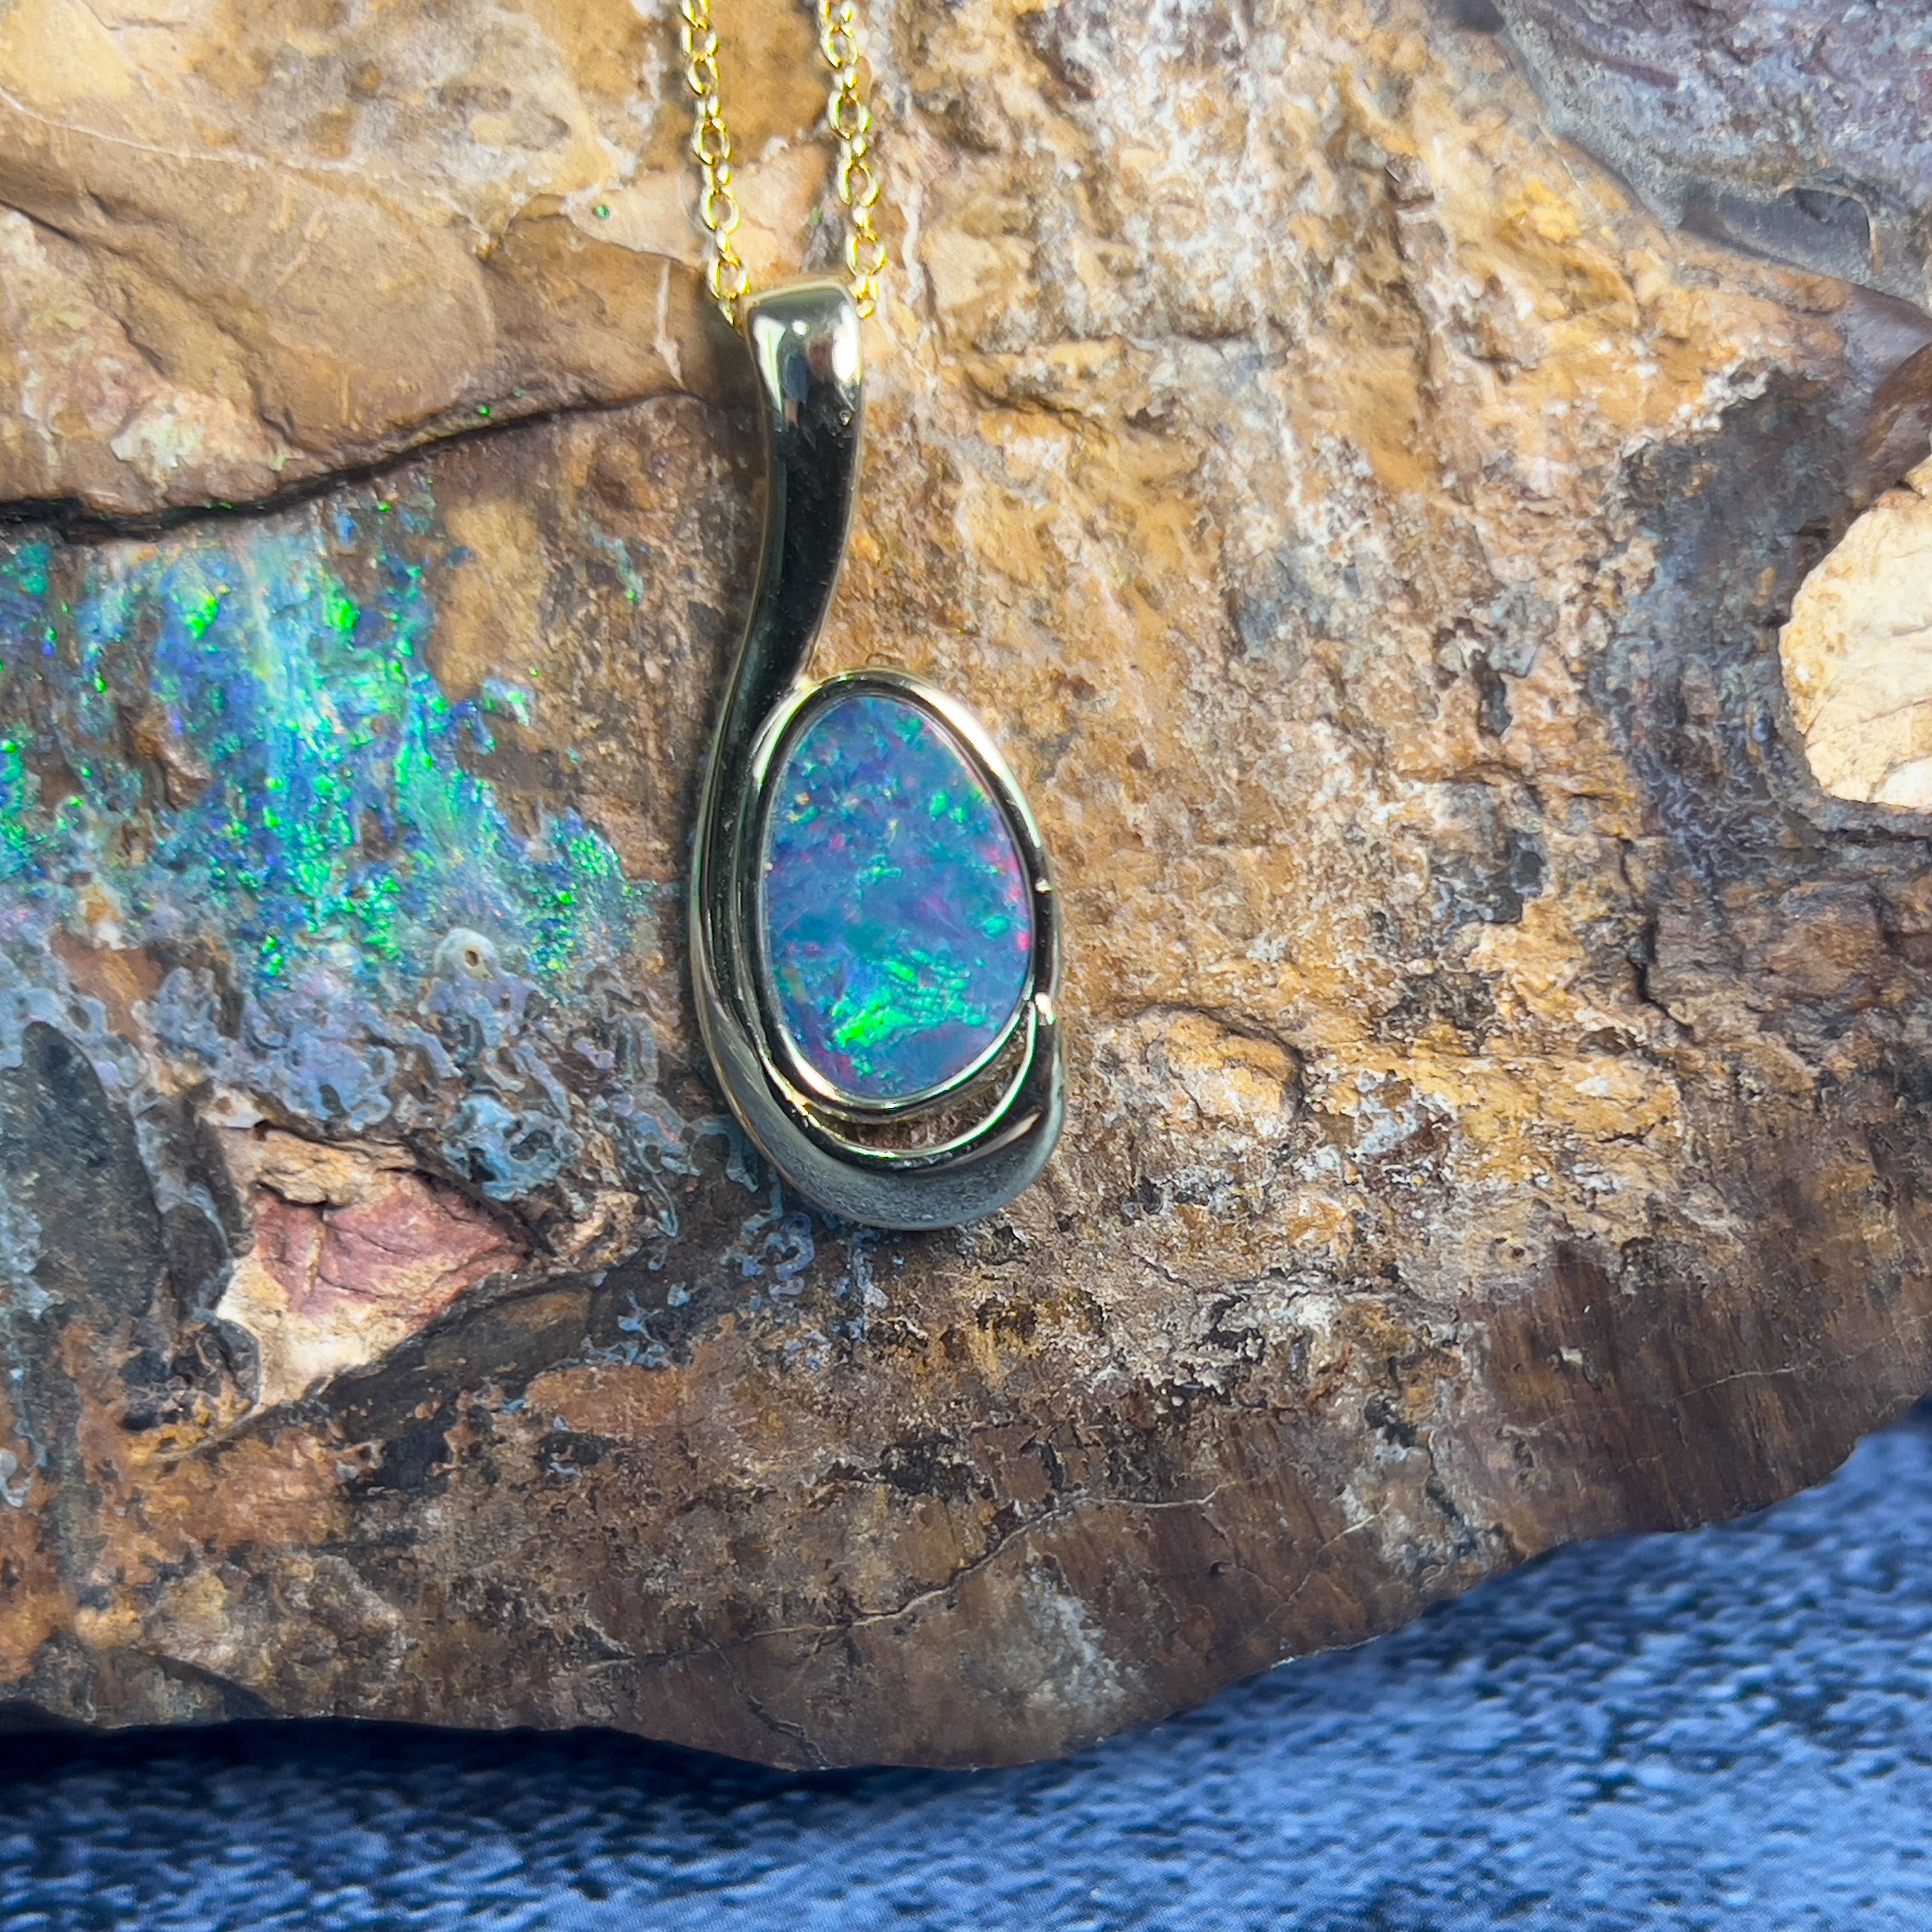 Gold Plated swirl Opal doublet 27.7x11mm pendant - Masterpiece Jewellery Opal & Gems Sydney Australia | Online Shop